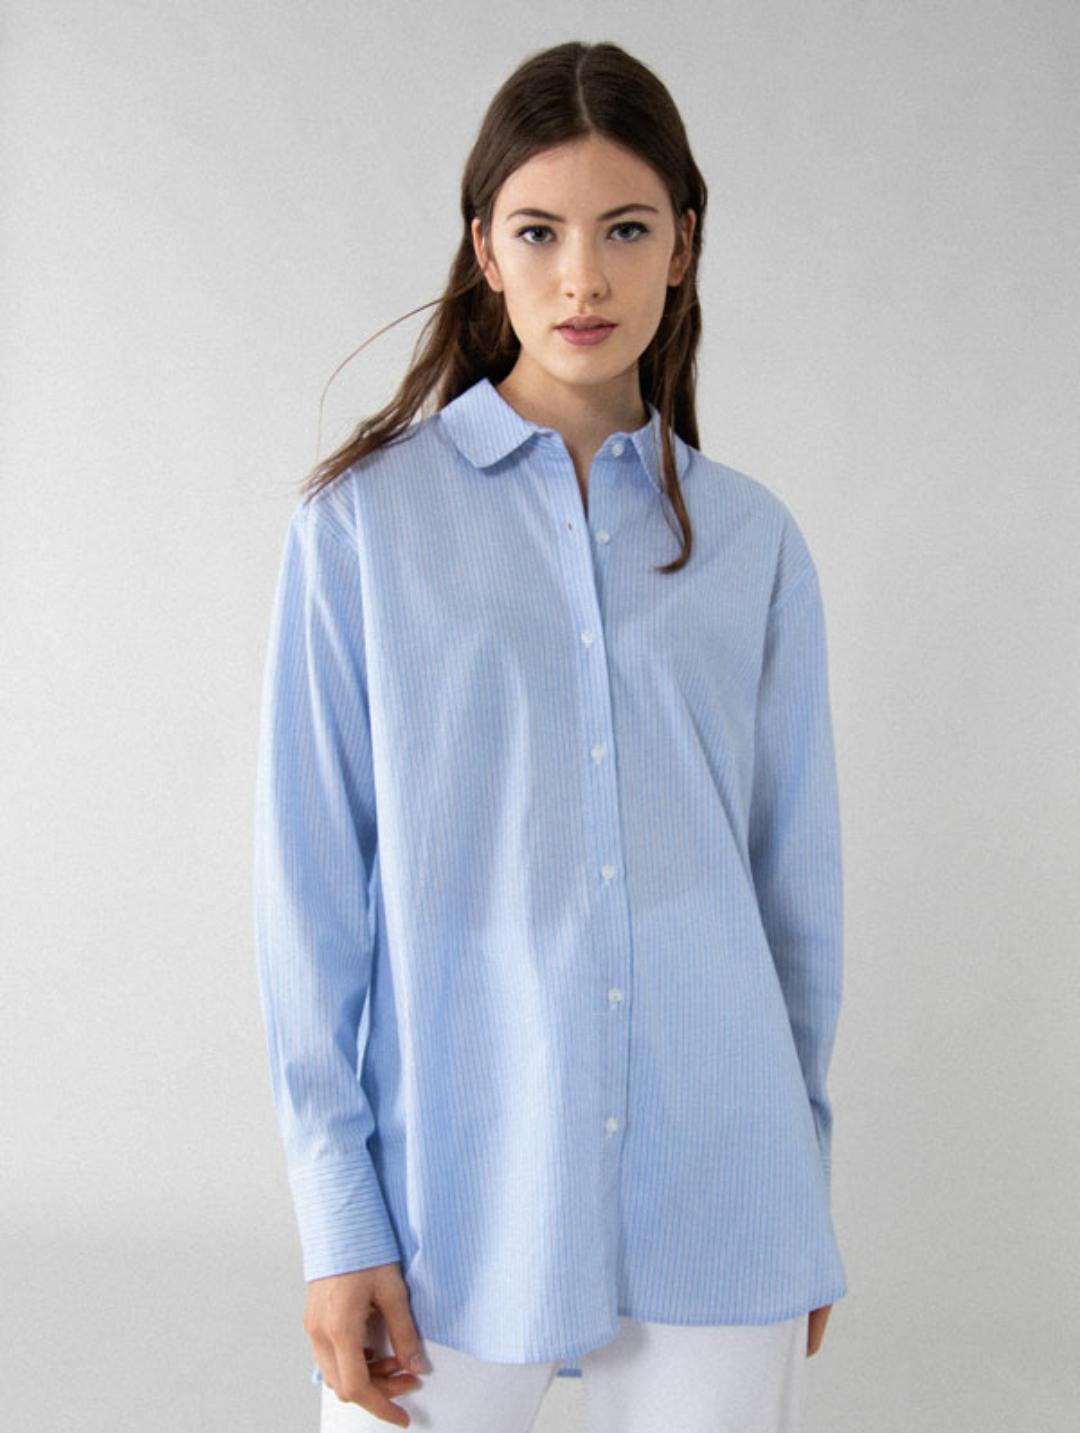 Camisa popelín básica de rayas azules y blancas (12’99€)